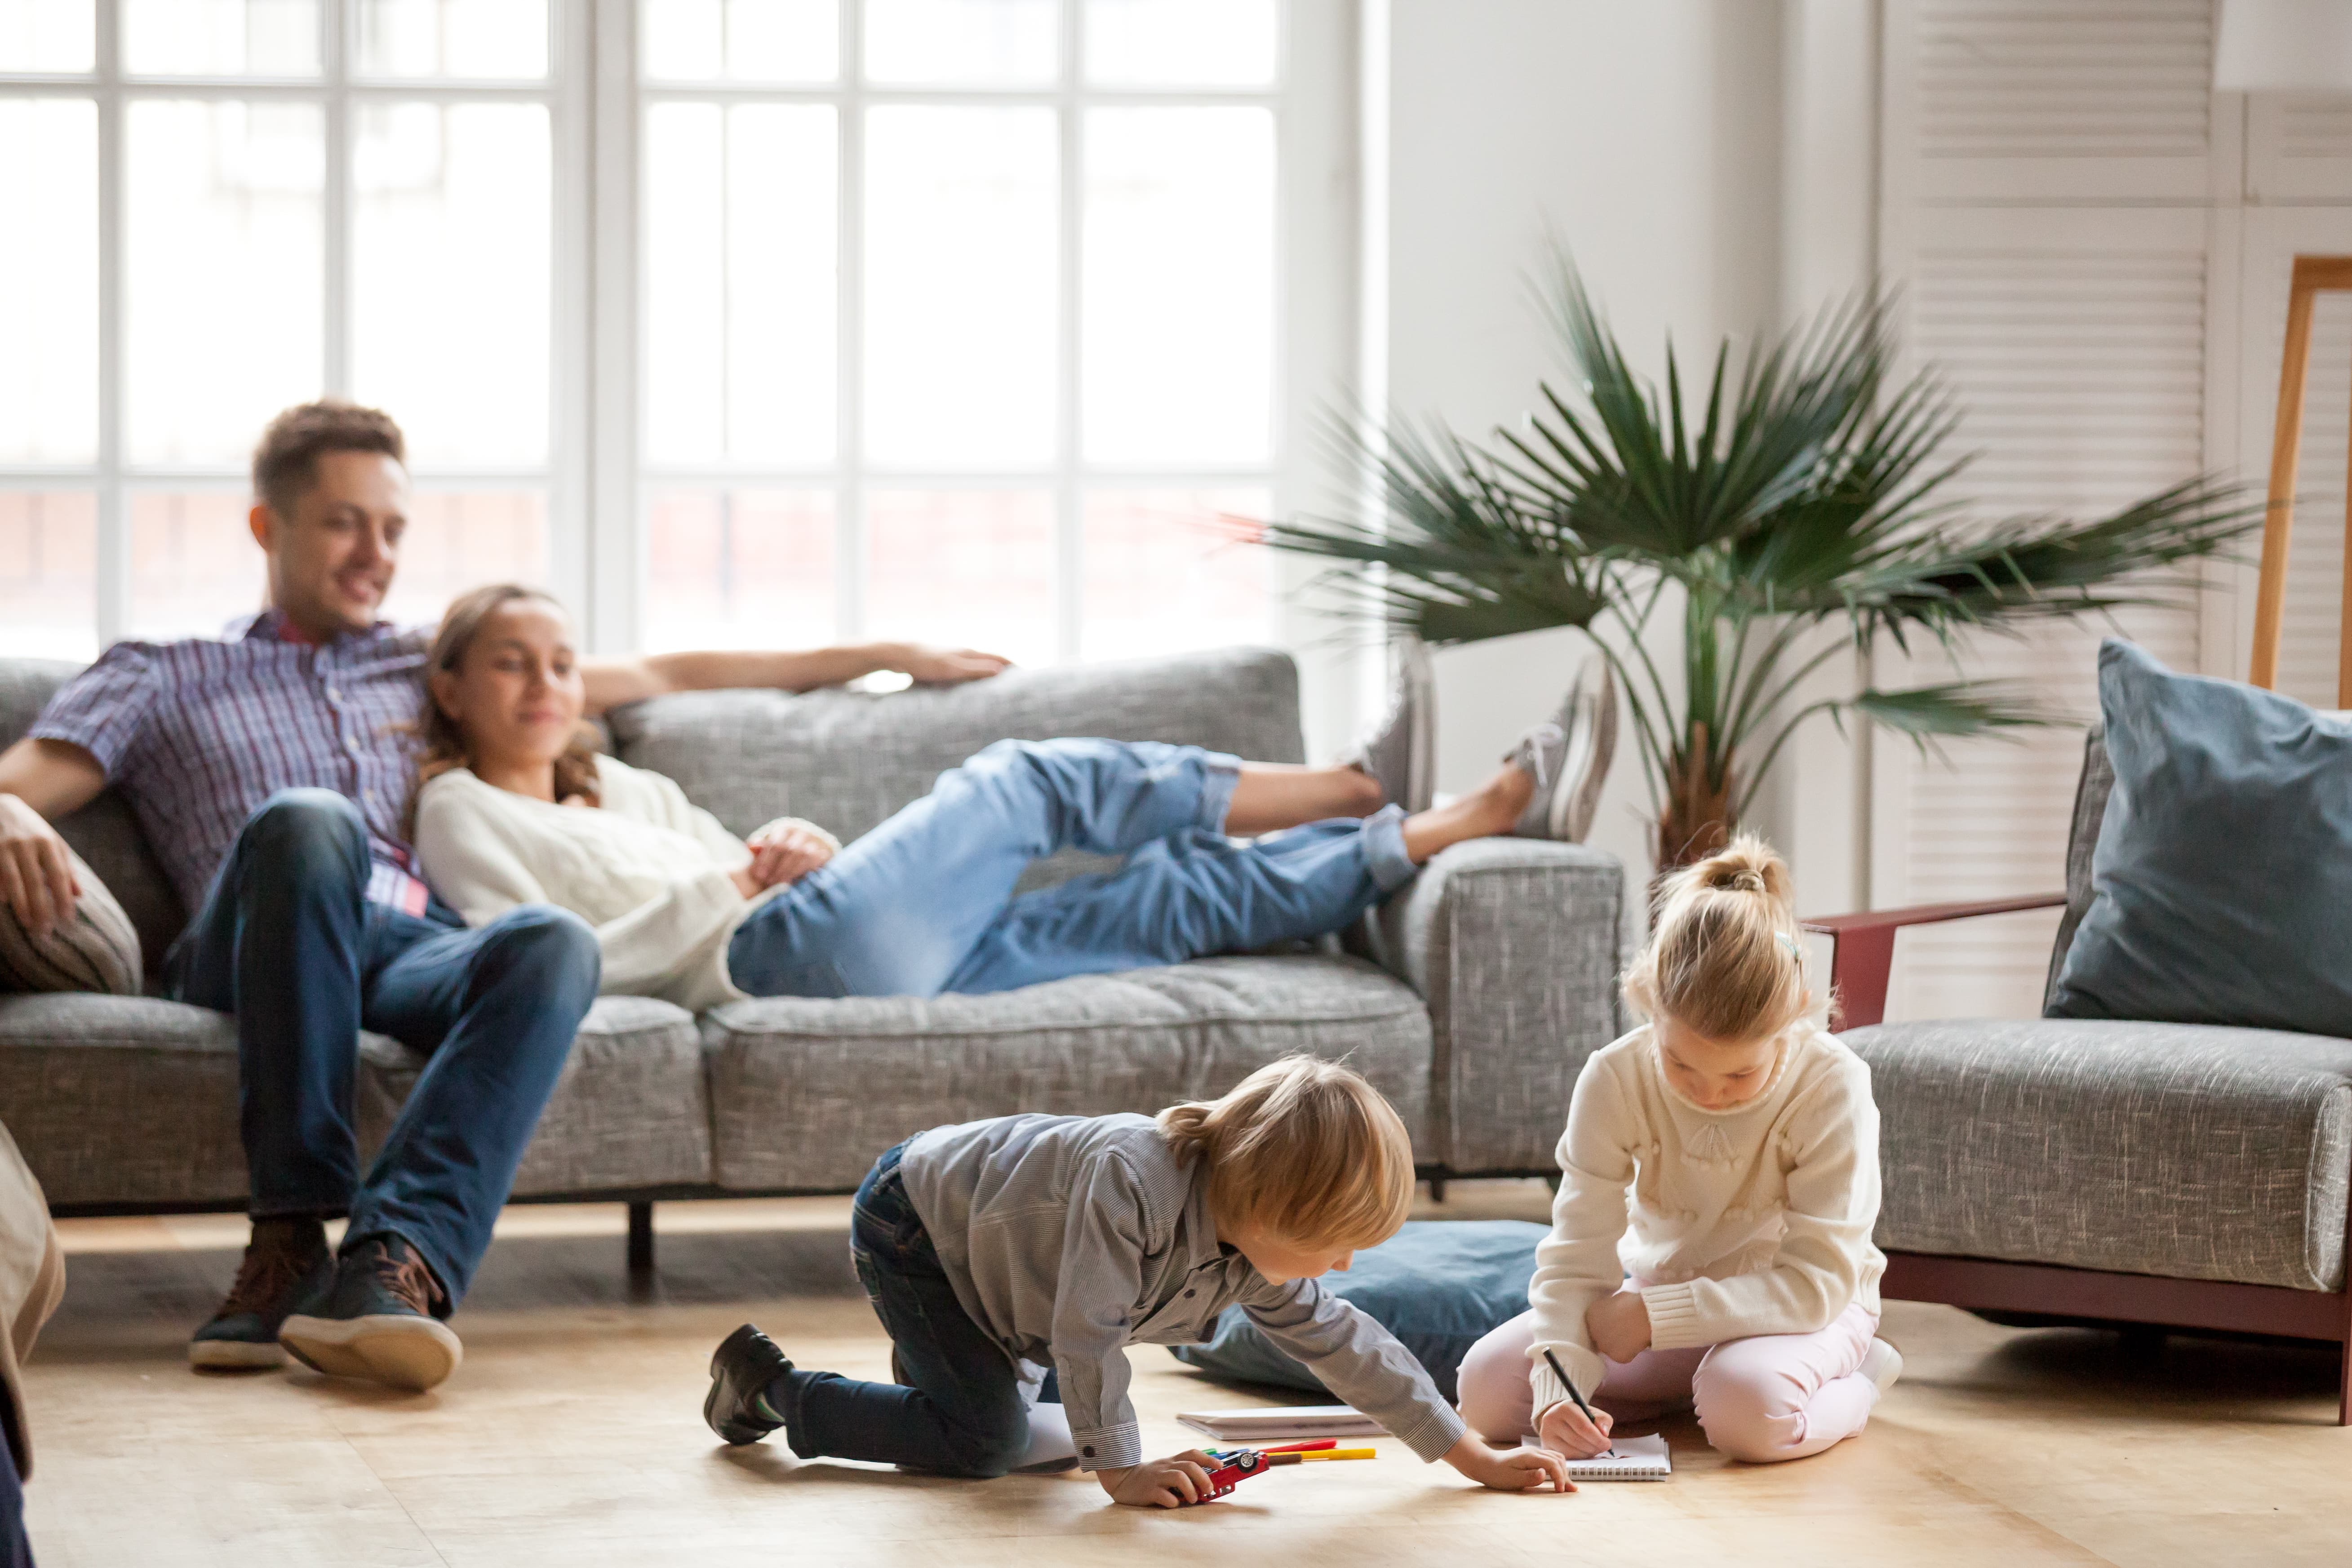 Ребенок наблюдает за родителями. Счастливая семья в квартире. Семья в гостиной. Семья на диване. Семья с детьми в гостиной.